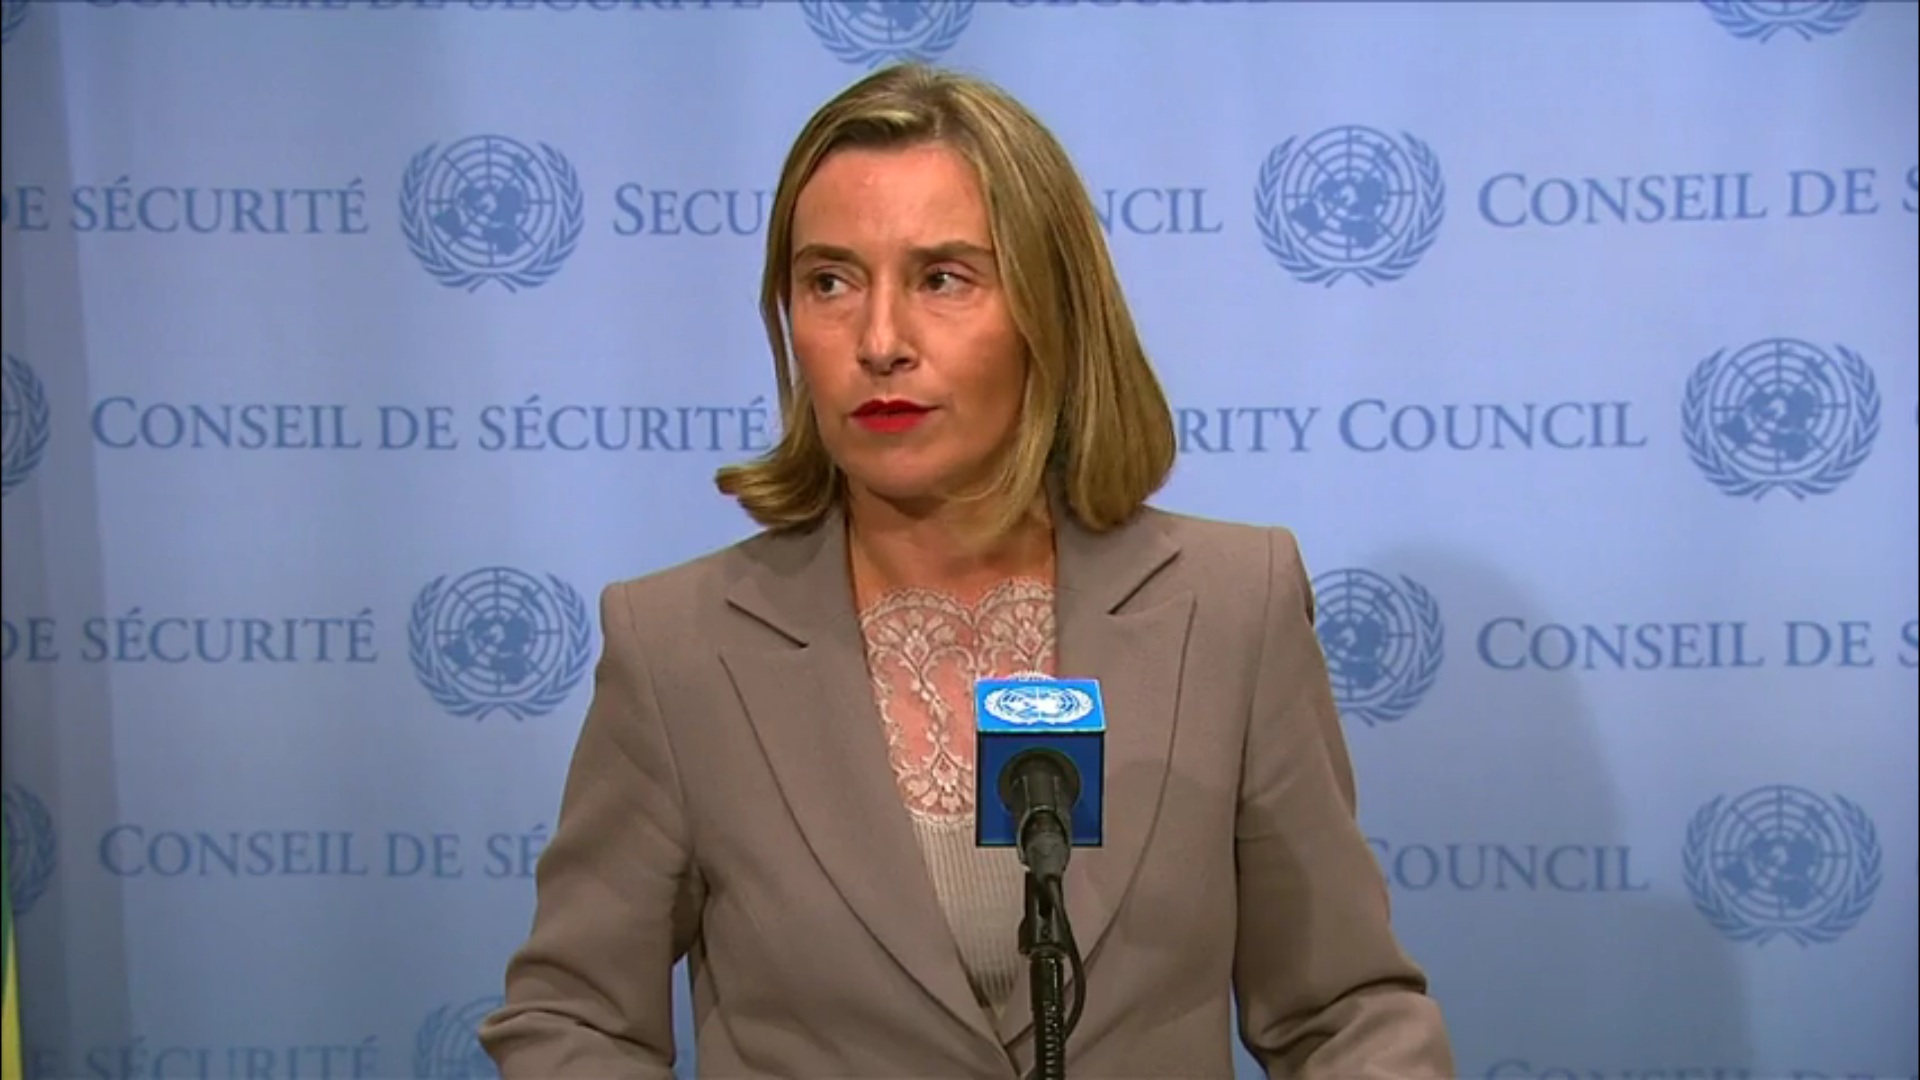 Mogherini: EU, UN will continue supporting JCPOA